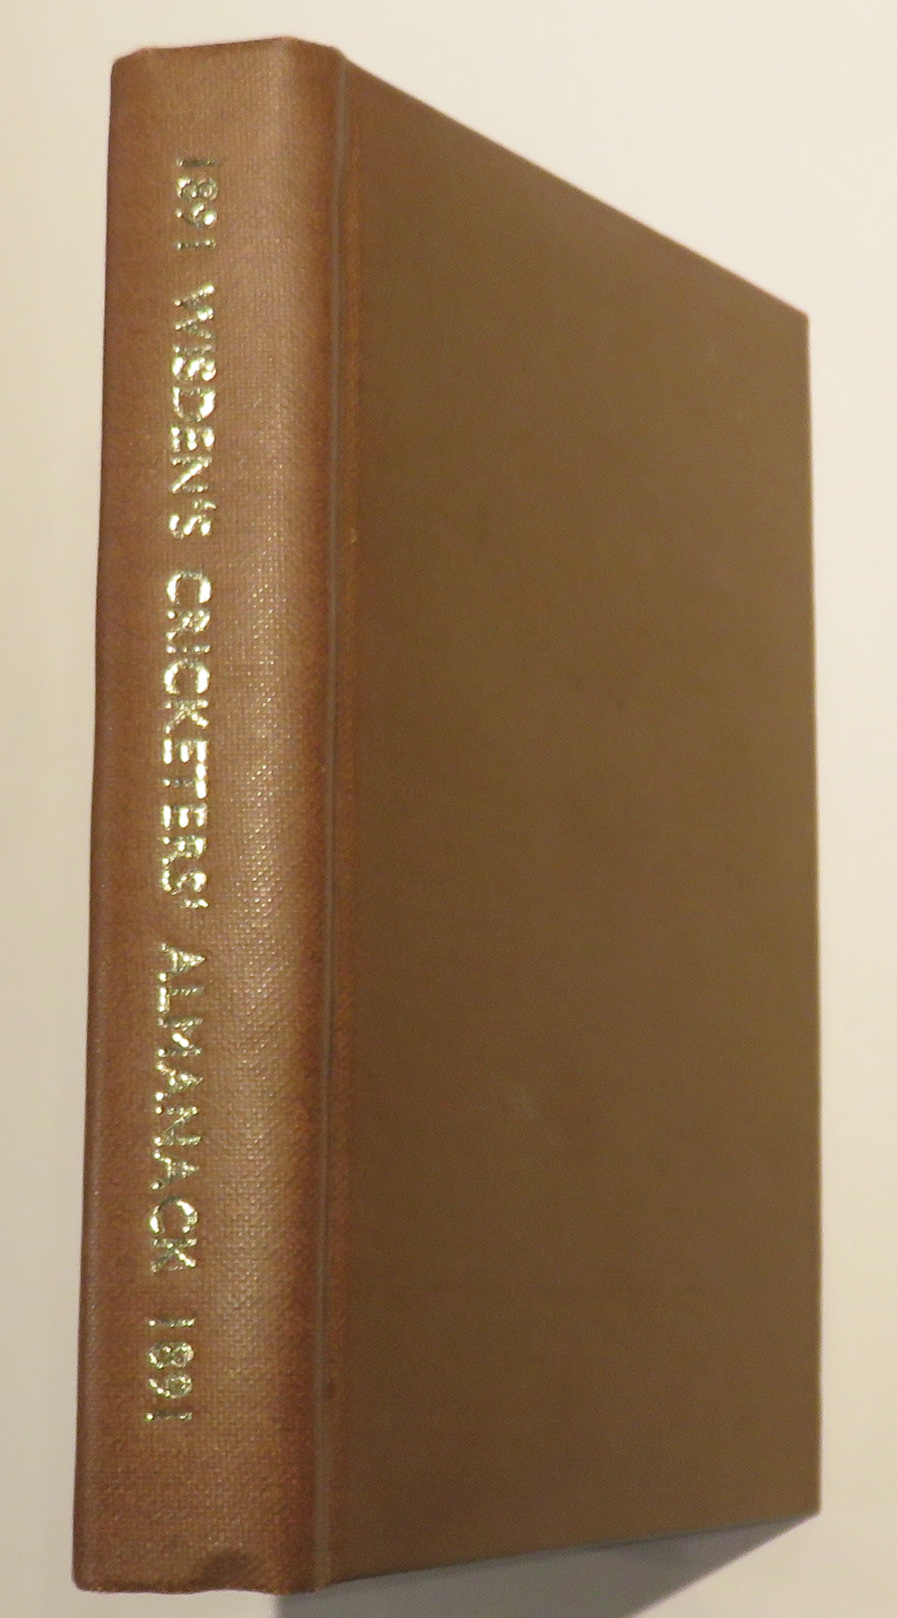 John Wisden's Cricketers' Almanack For 1891